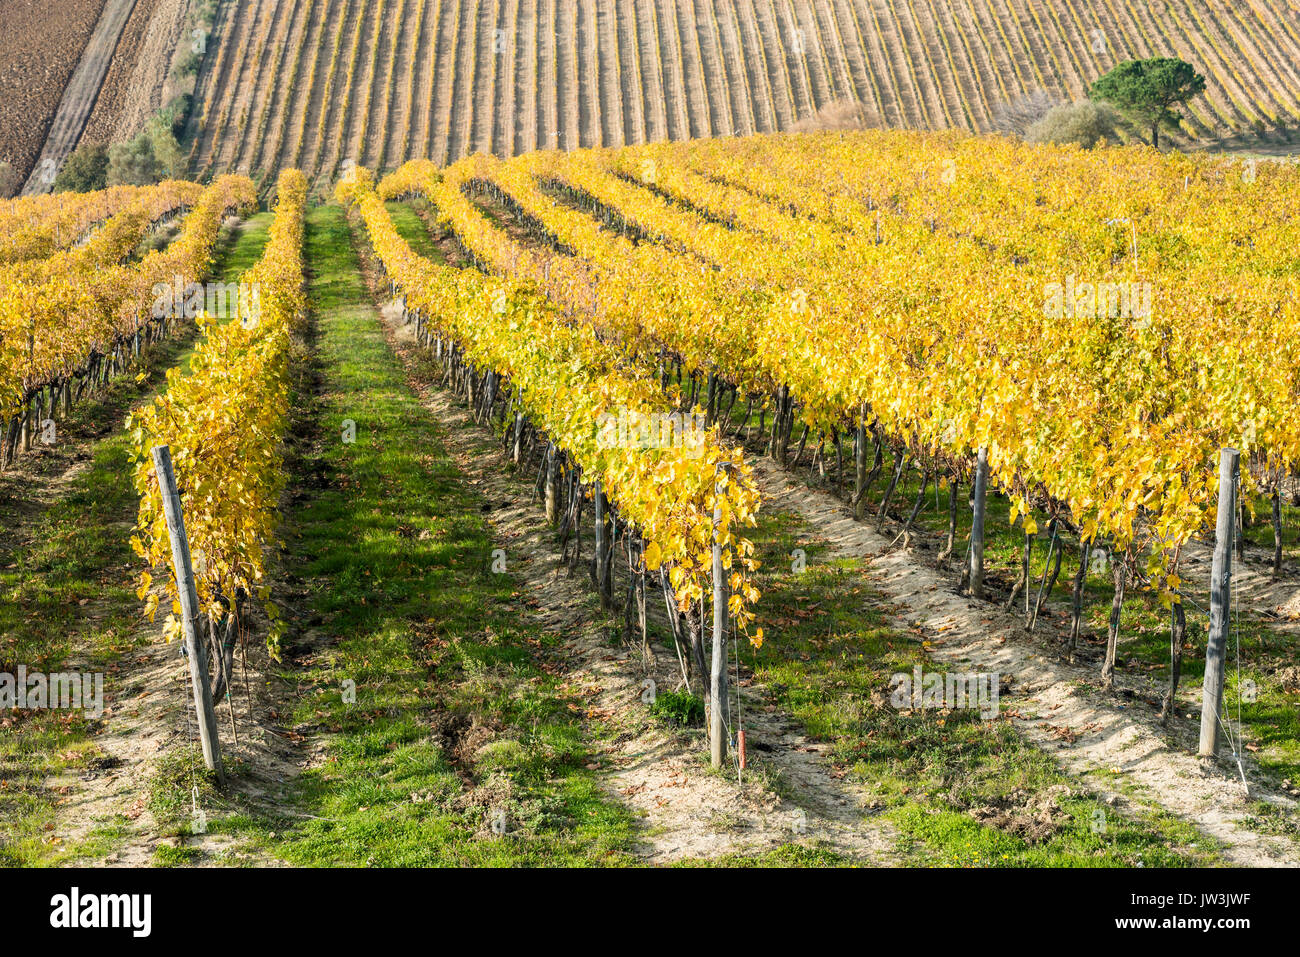 Cerrar vista de un vasto viñedo campos amarillos con perspectiva hileras paralelas de vides Foto de stock